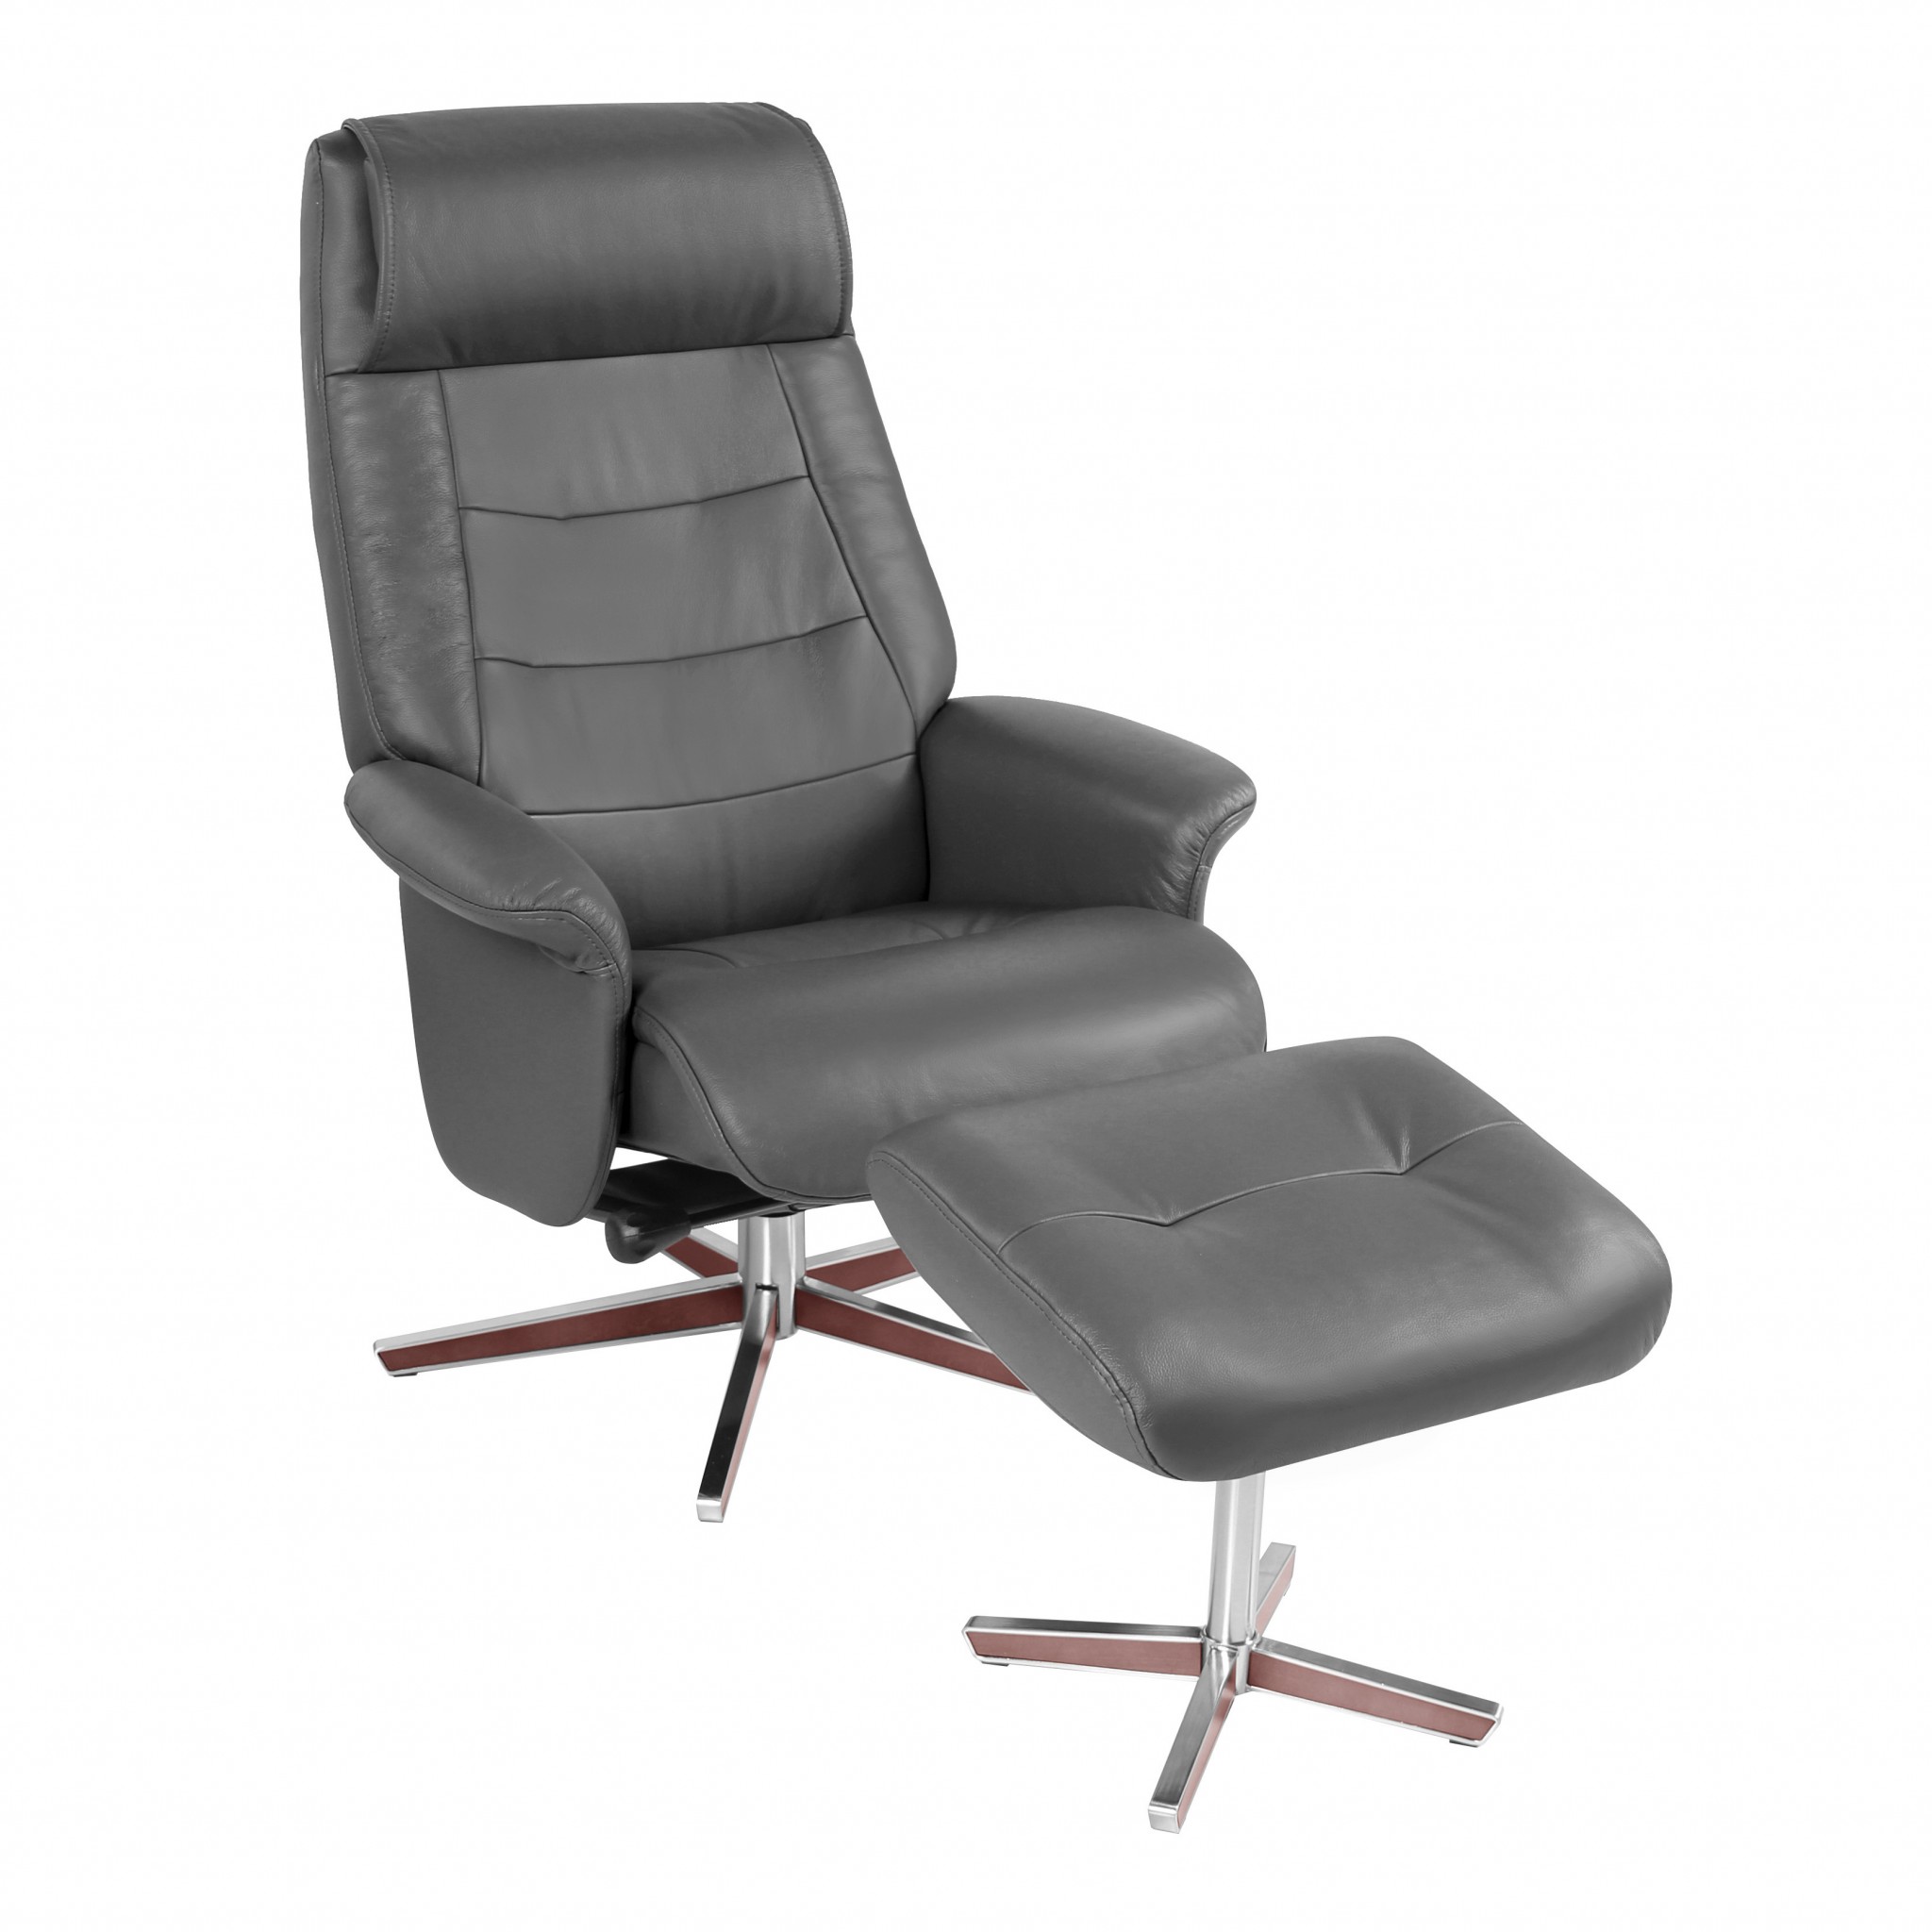 26" x 19" x 39.5" Dark Gray Top Grain Leather / Vinyl match Scandinavian style recline chair & ottoman